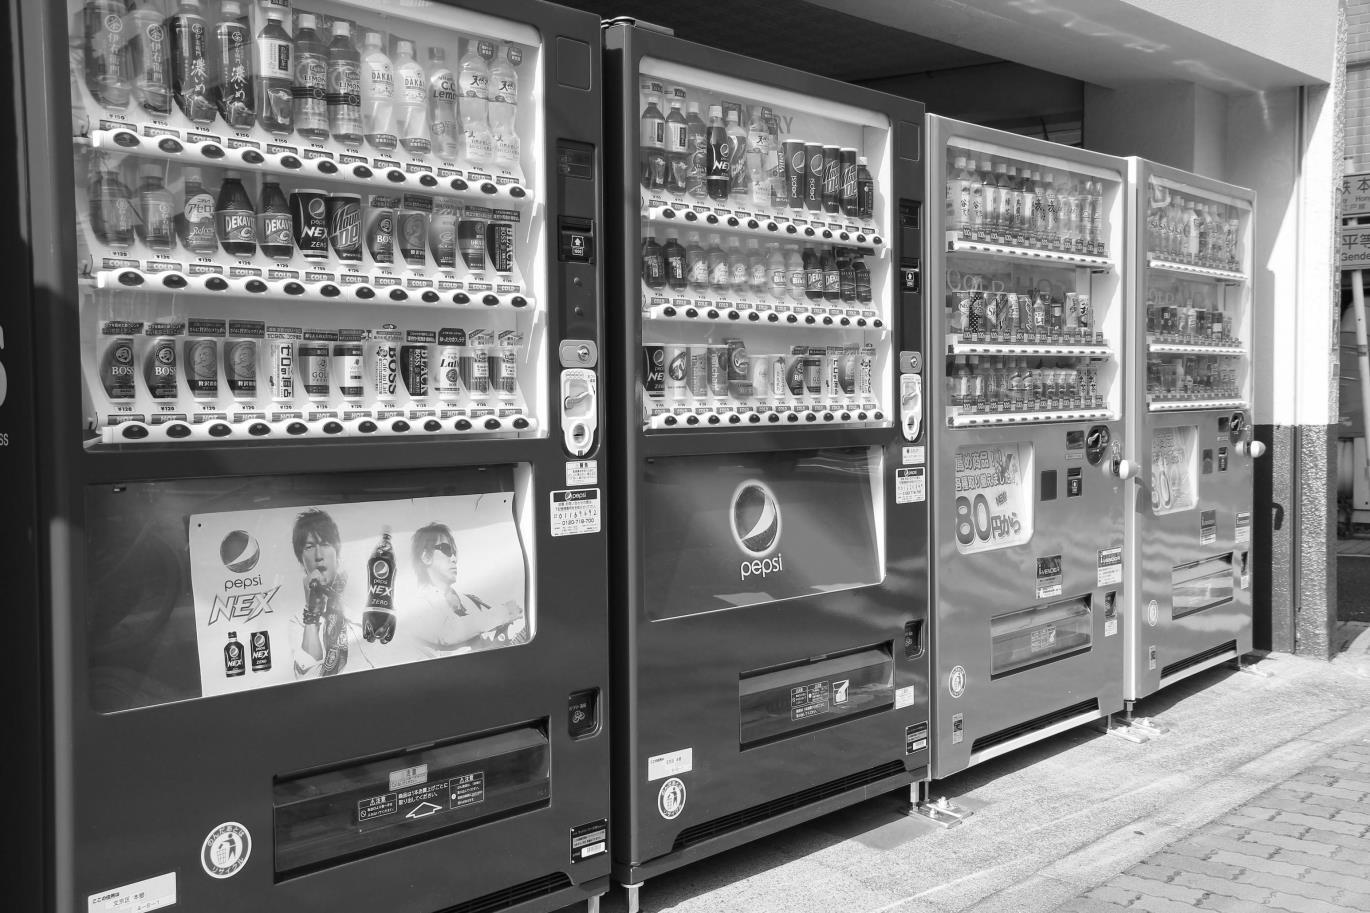 Vending machines.